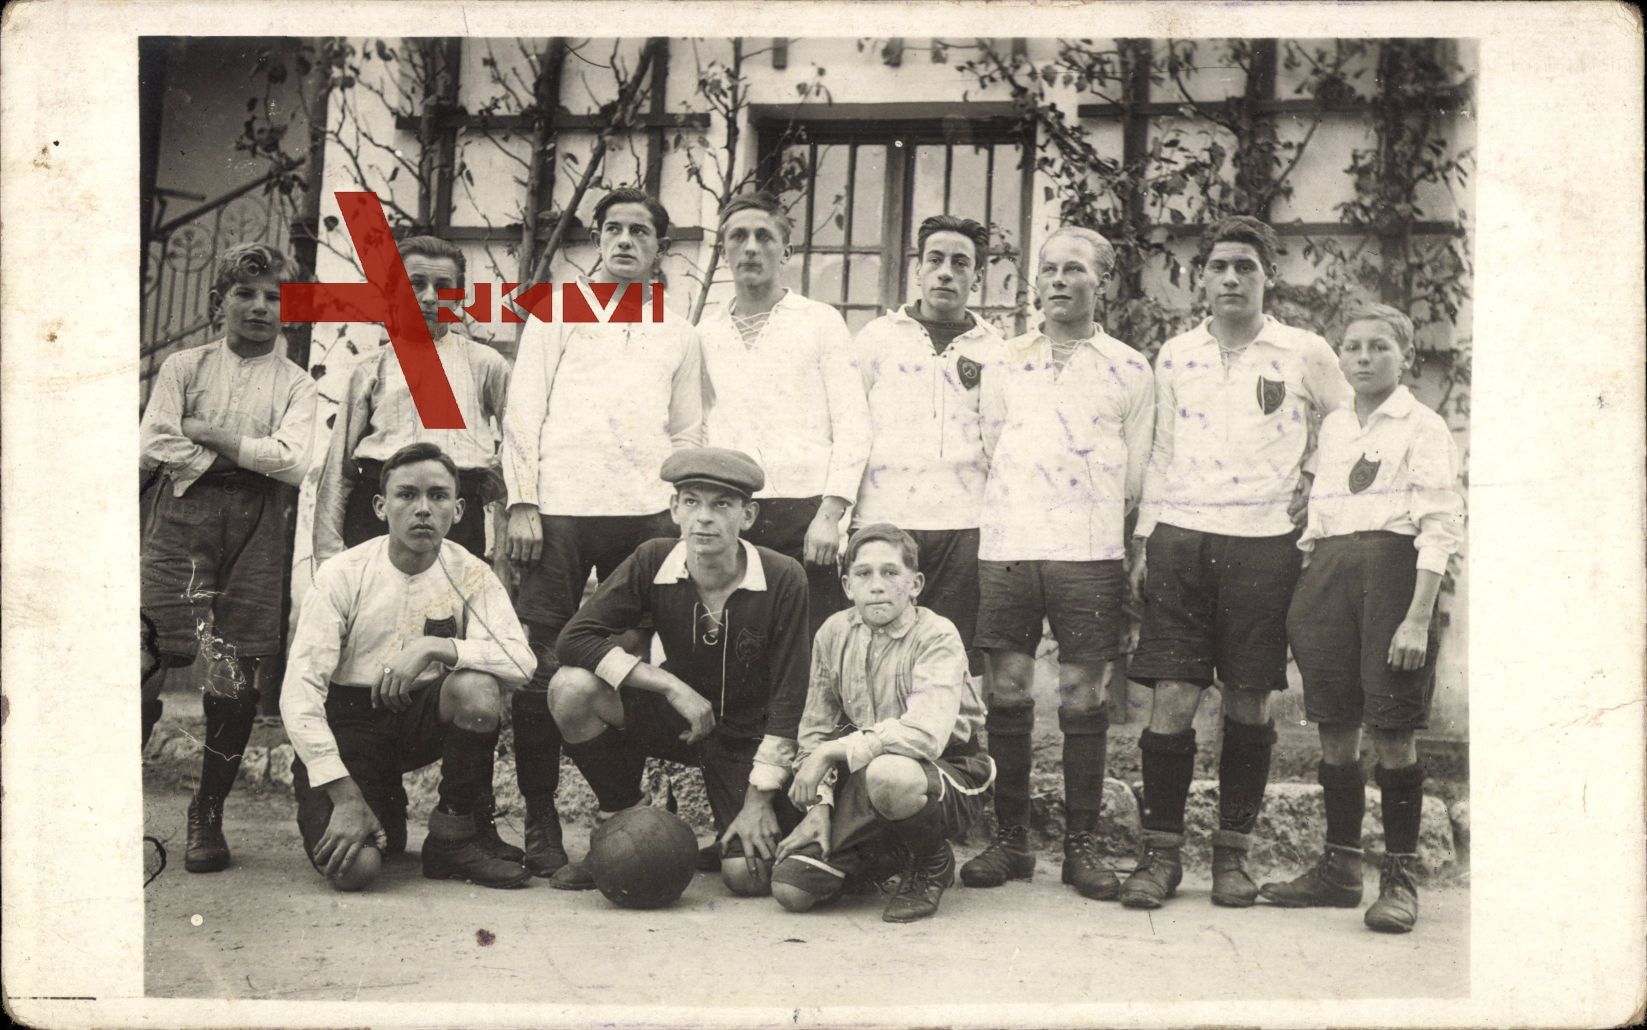 Gruppenfoto einer Fußballmannschaft, Torwart, Trikots